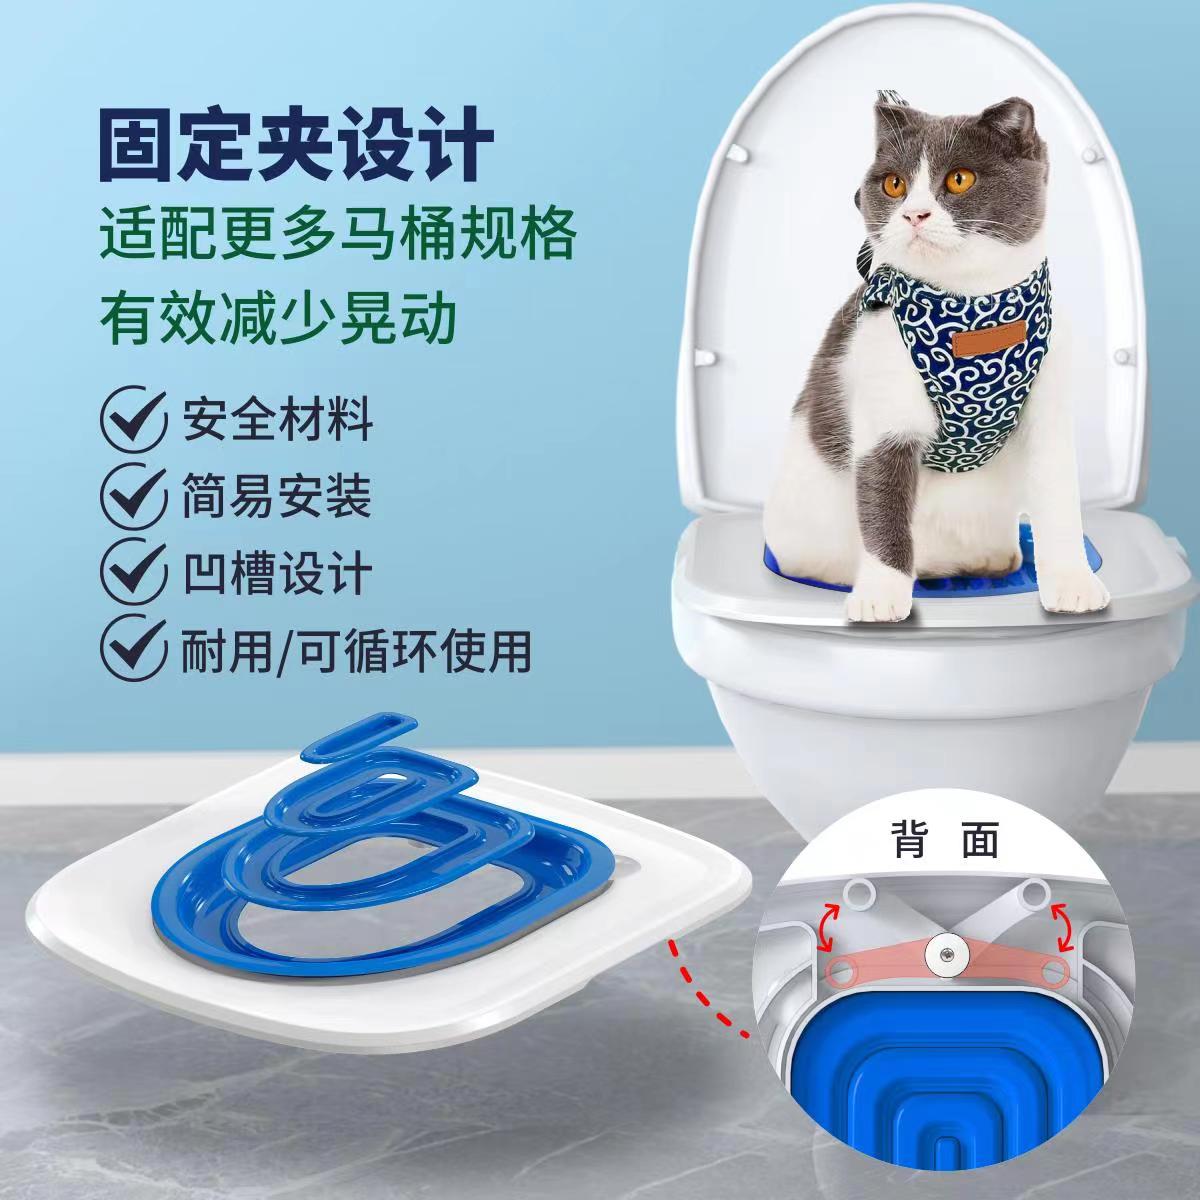 宠物用品猫马桶训练器猫咪坐便器猫厕所垫可放猫砂盘坐便训练器